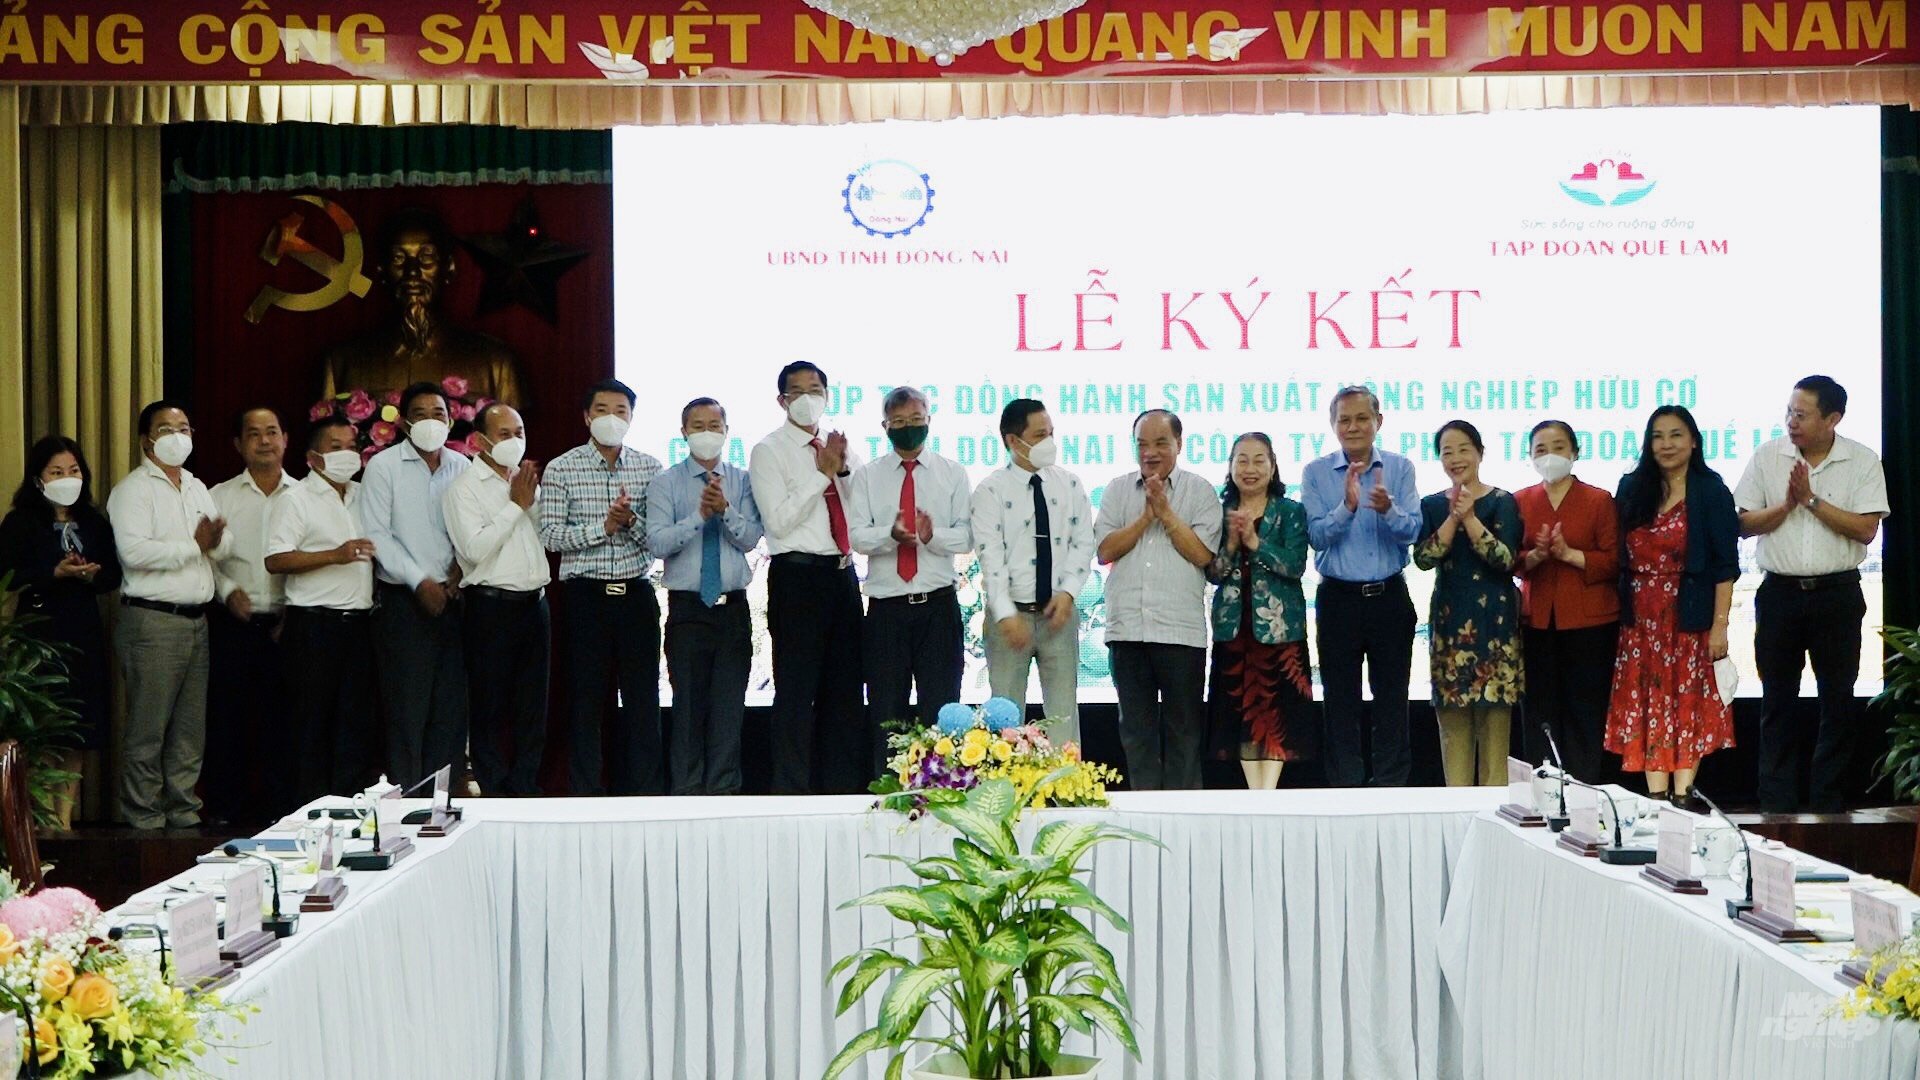 Các đơn vị chúc mừng việc ký kết hợp tác thành công giữa UBND tỉnh Đồng Nai và Công ty CP Tập đoàn Quế Lâm. Ảnh: Minh Sáng.